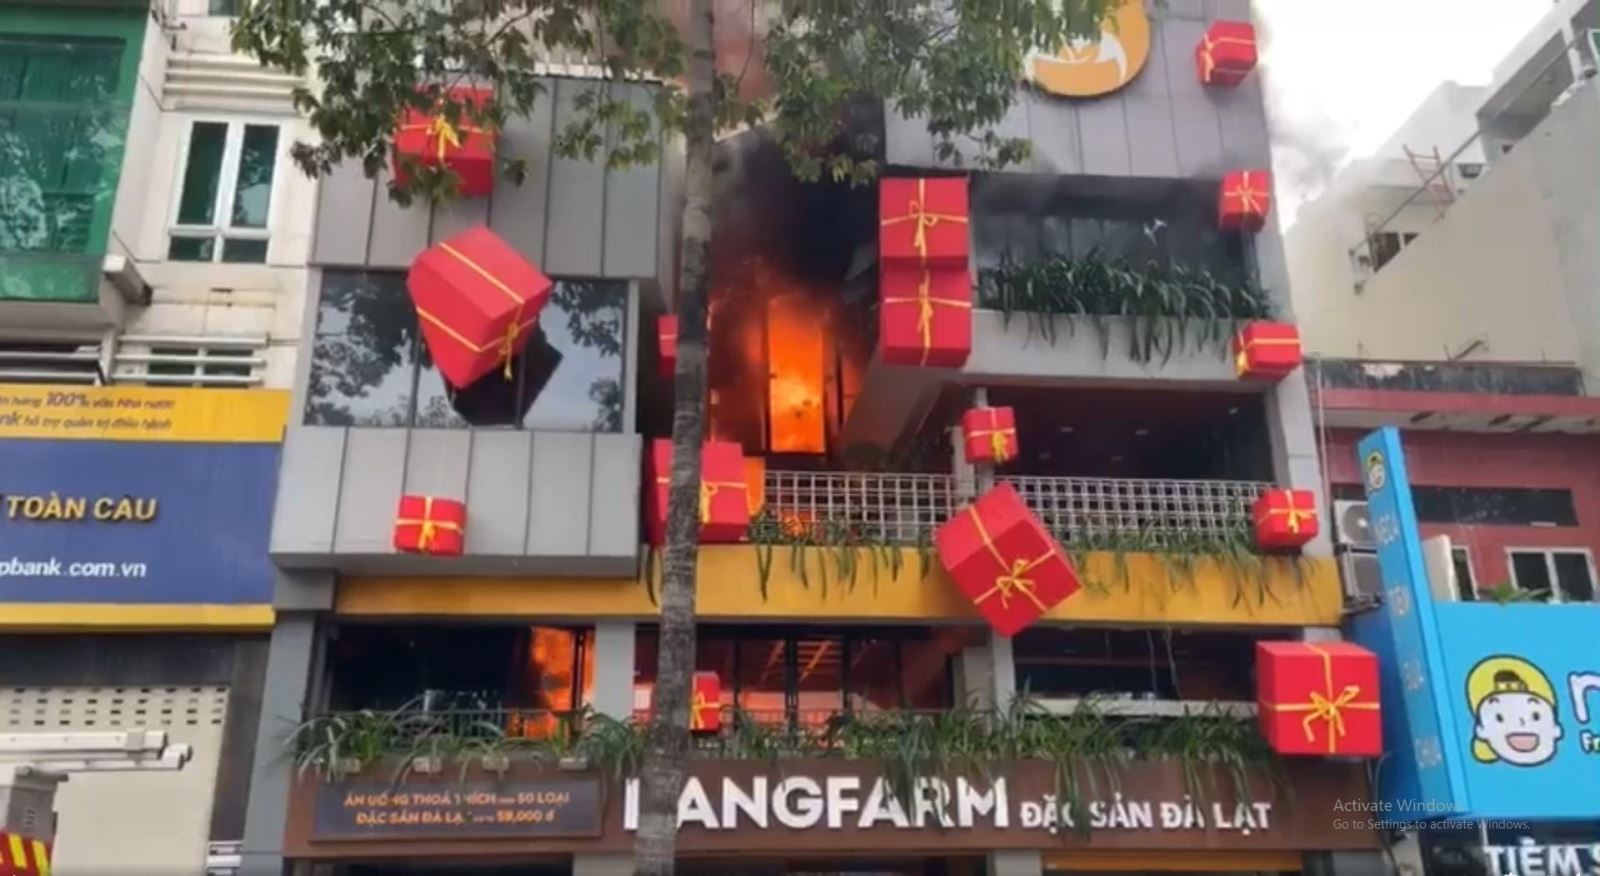 Cháy lớn tại nhà hàng ở TP.HCM, nhiều tầng bị thiêu rụi